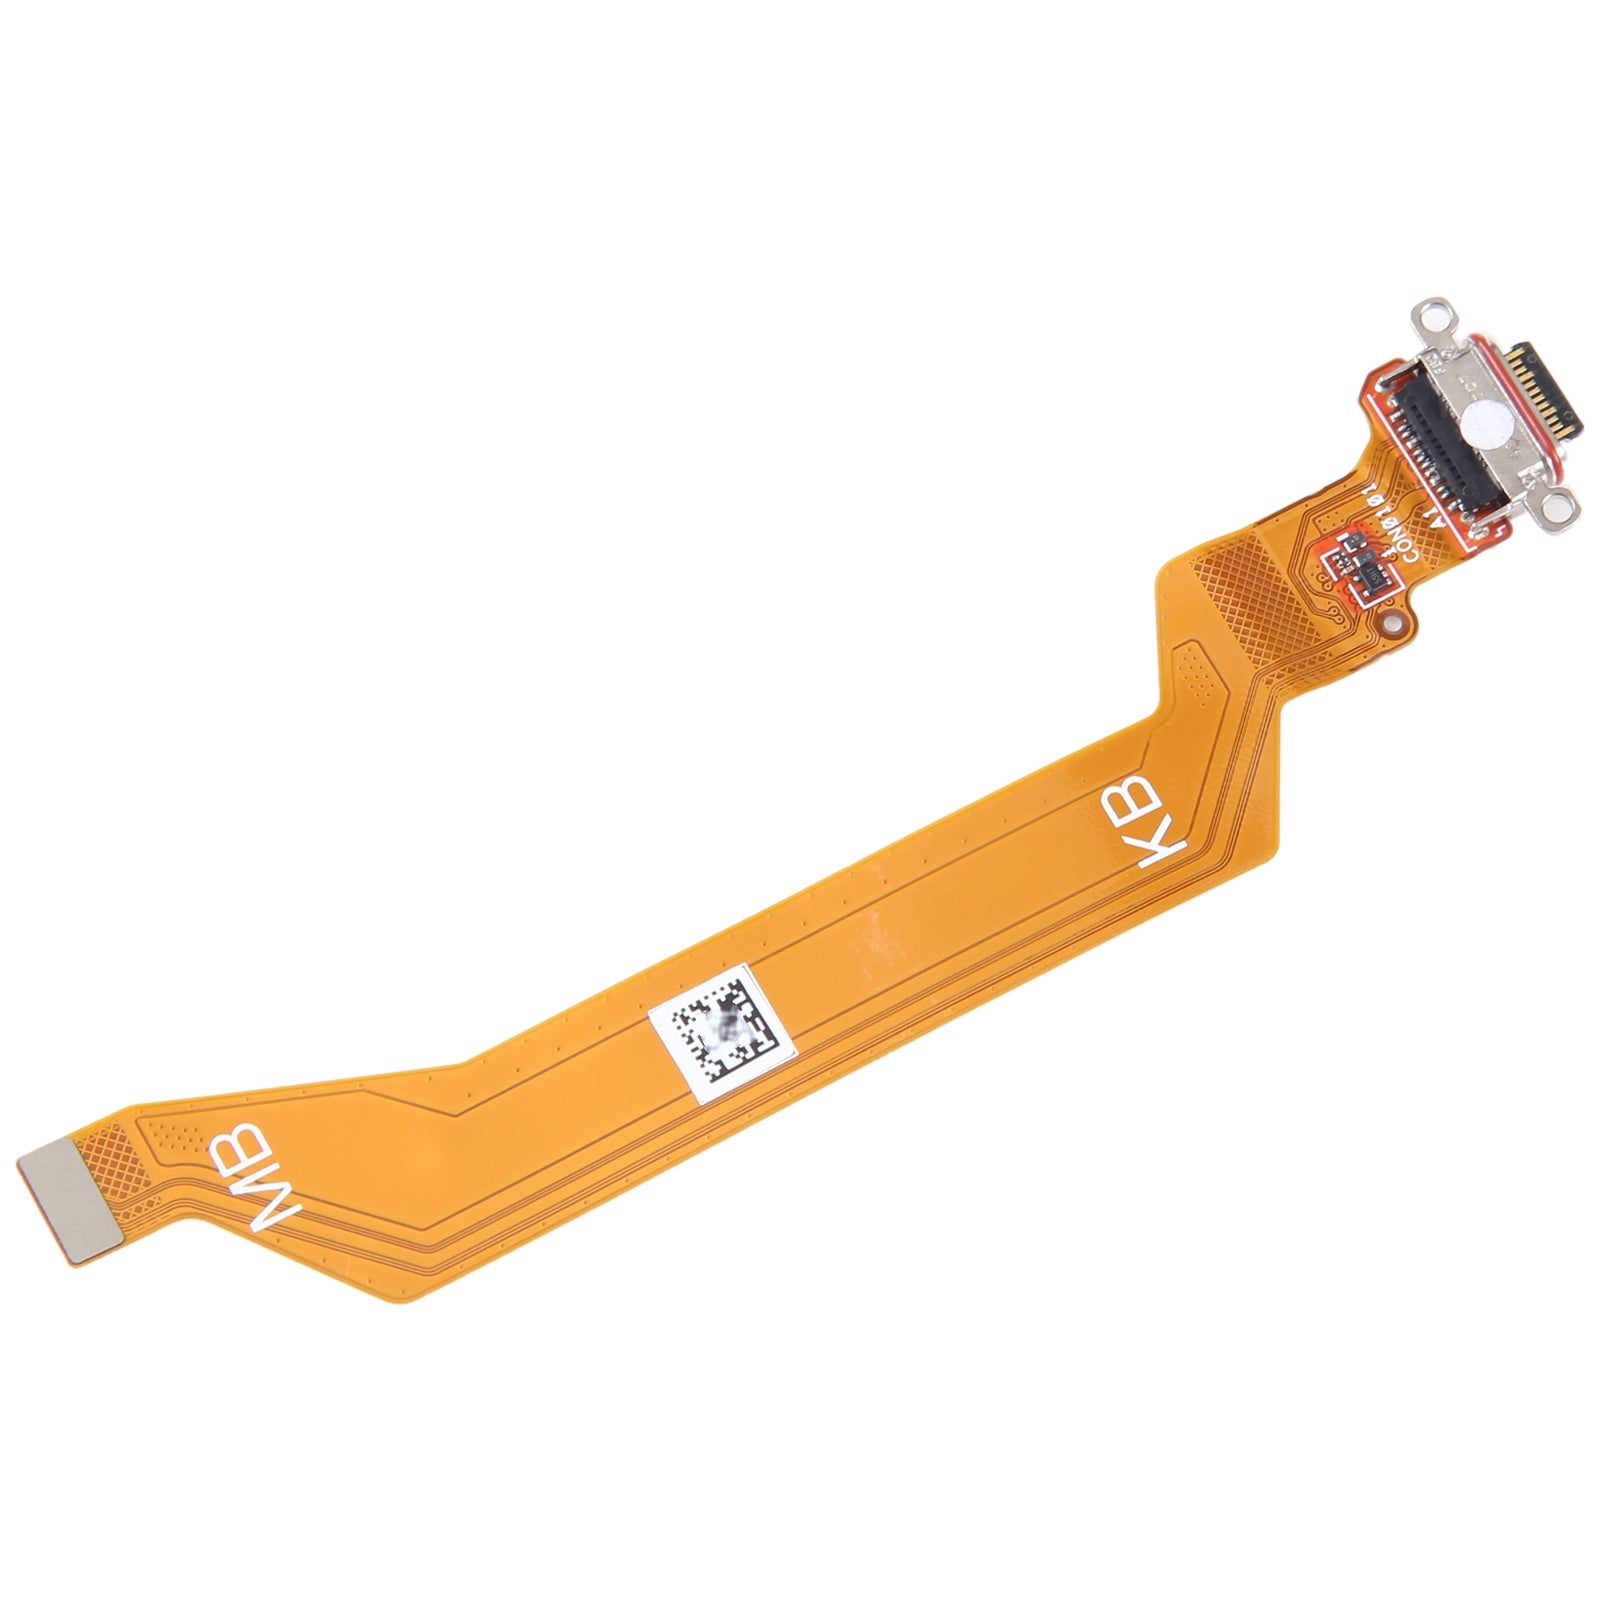 Dock flexible de chargement de données USB Asus Zenfone 9 AI2202-1A006EU